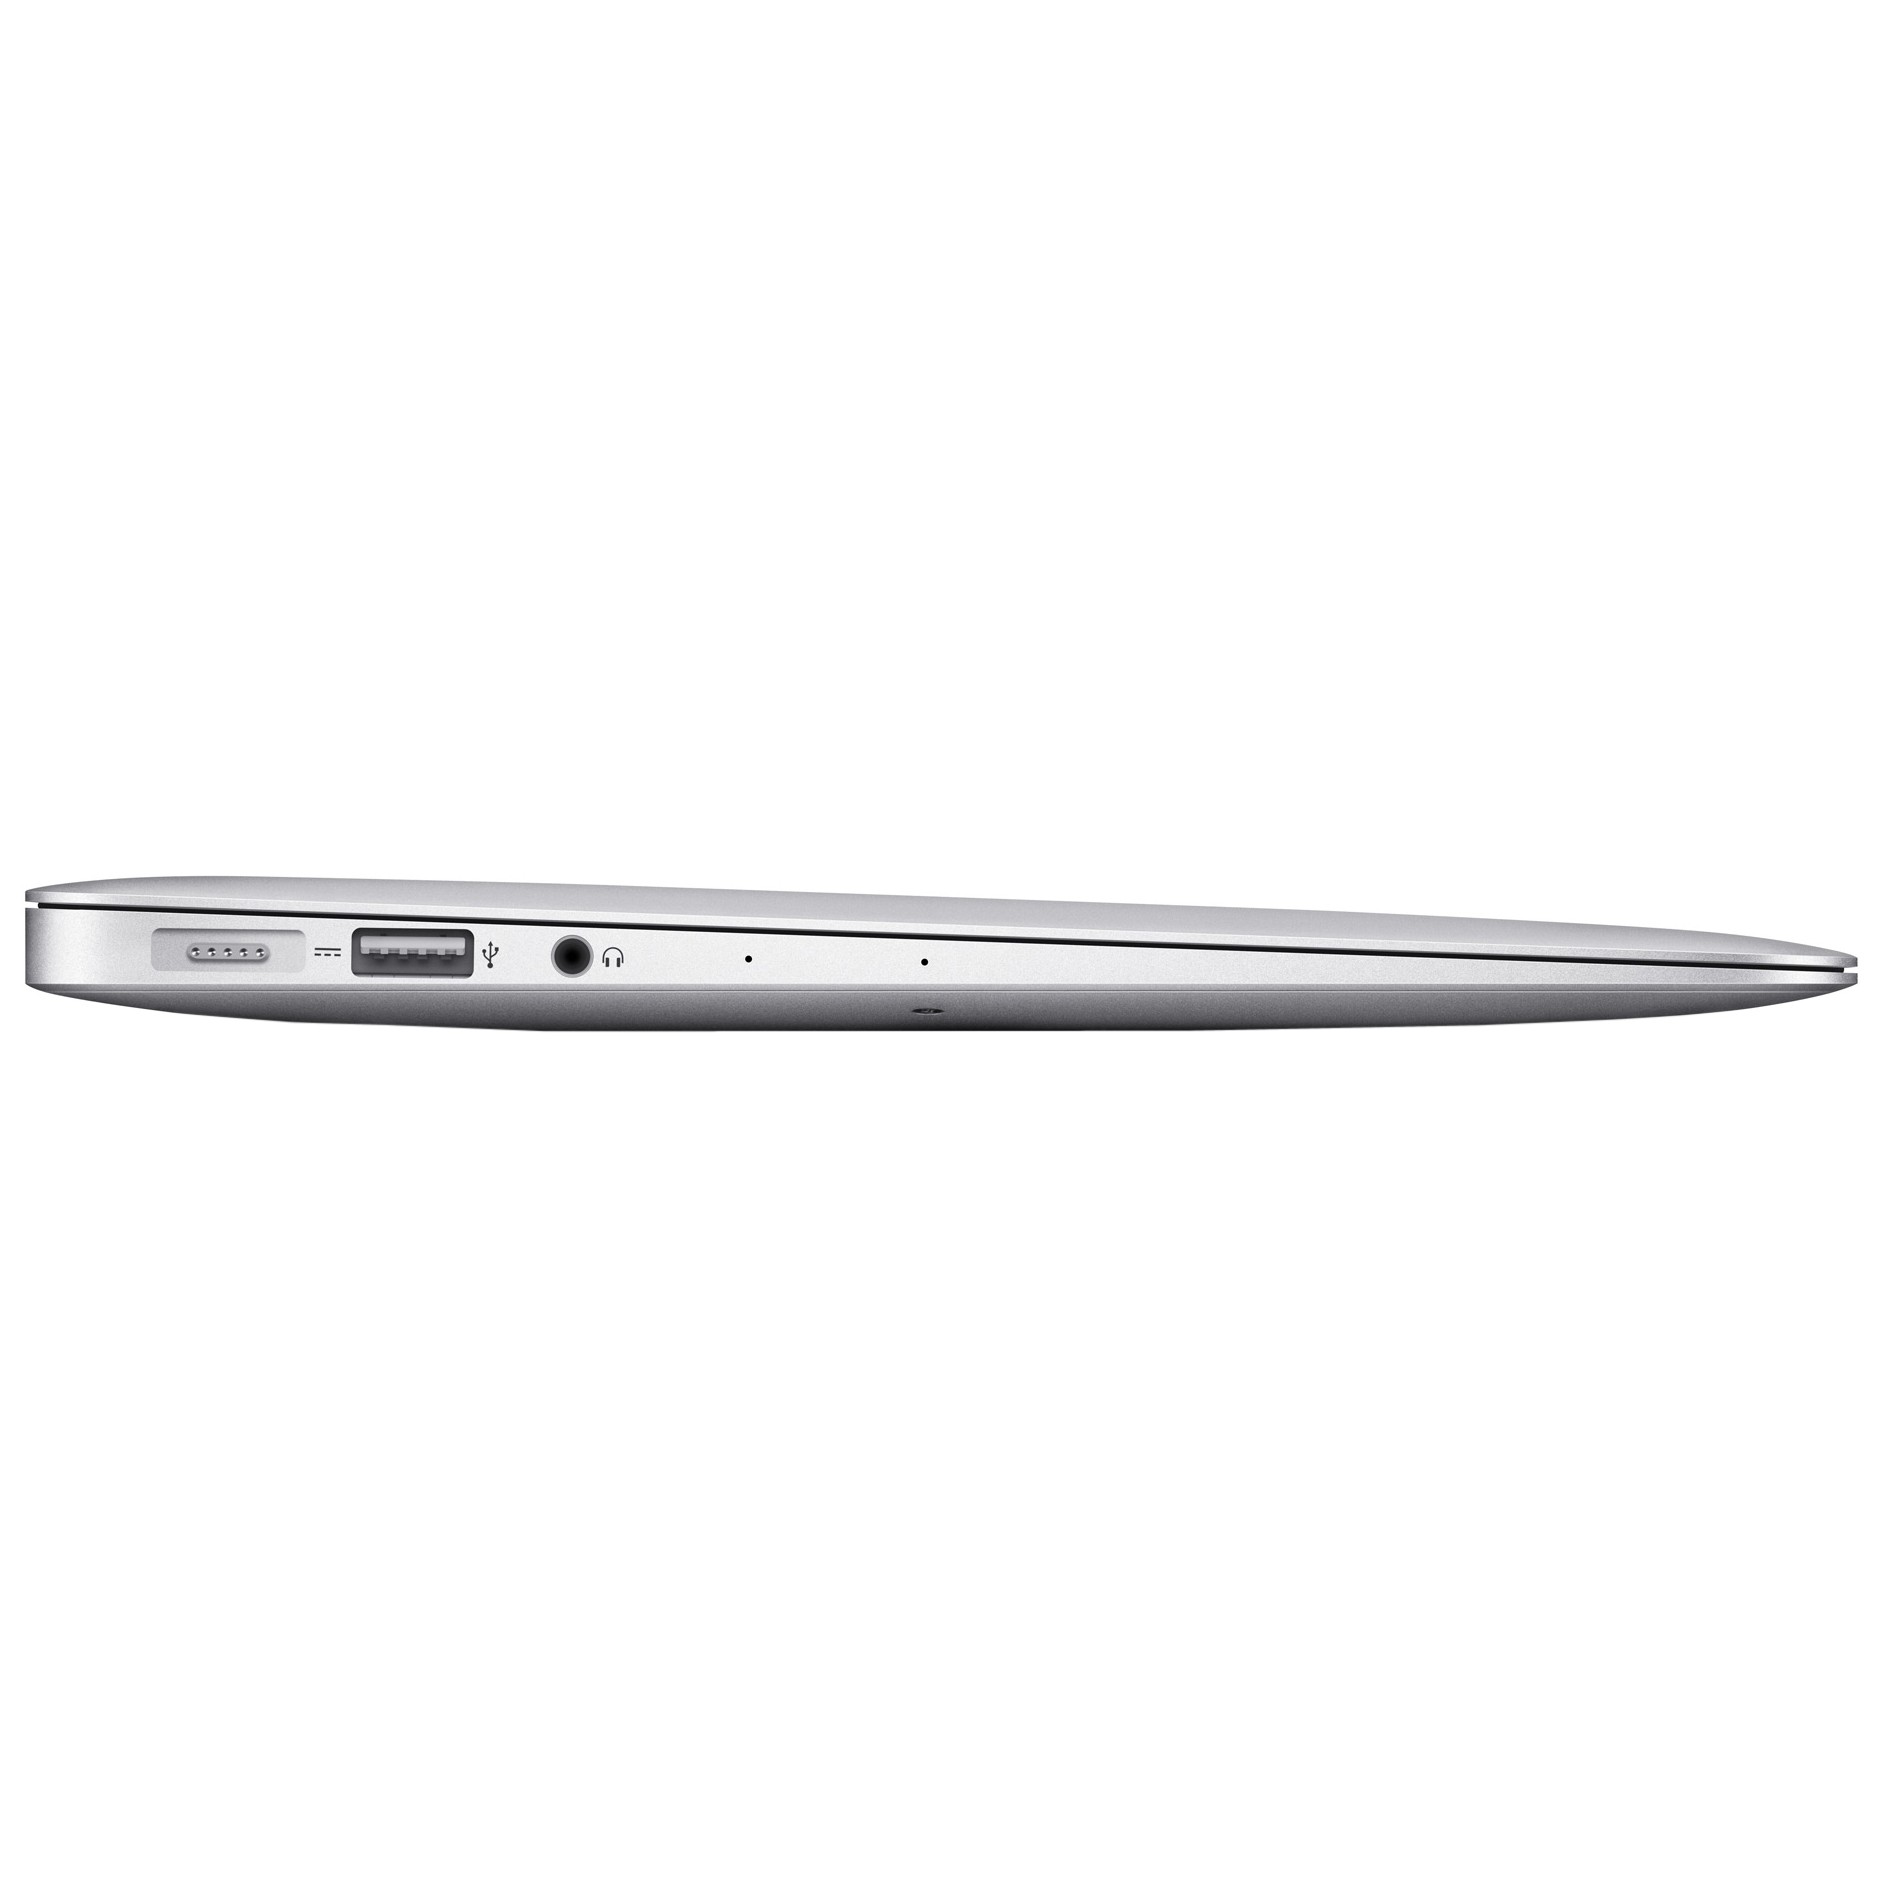 Apple MacBook Air 11 2013 (Z0NY00051)